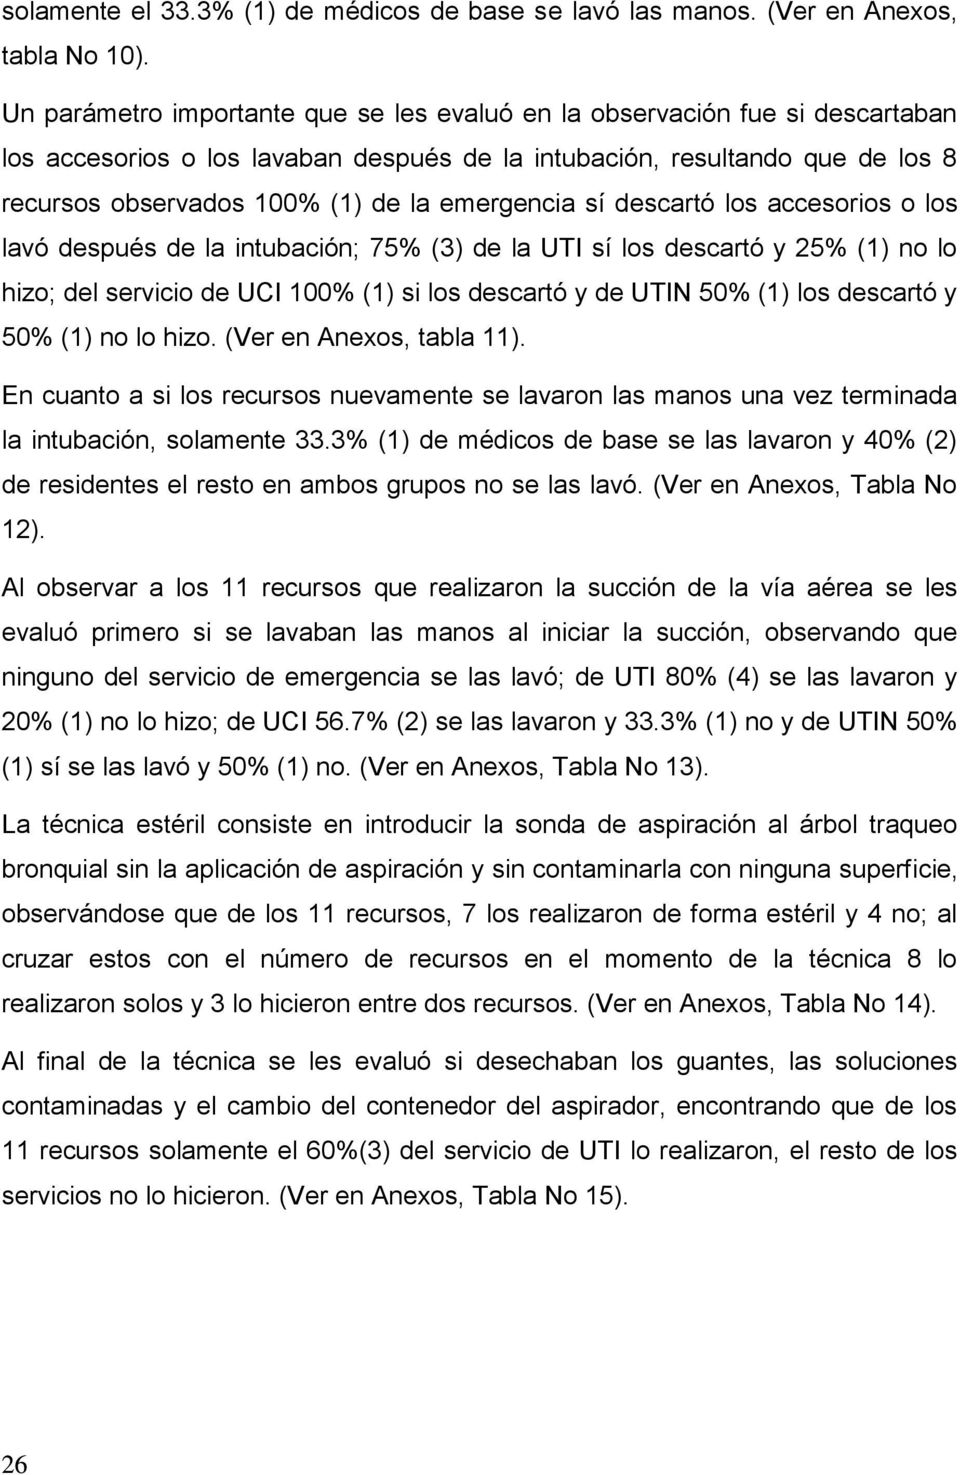 emergencia sí descartó los accesorios o los lavó después de la intubación; 75% (3) de la UTI sí los descartó y 25% (1) no lo hizo; del servicio de UCI 100% (1) si los descartó y de UTIN 50% (1) los